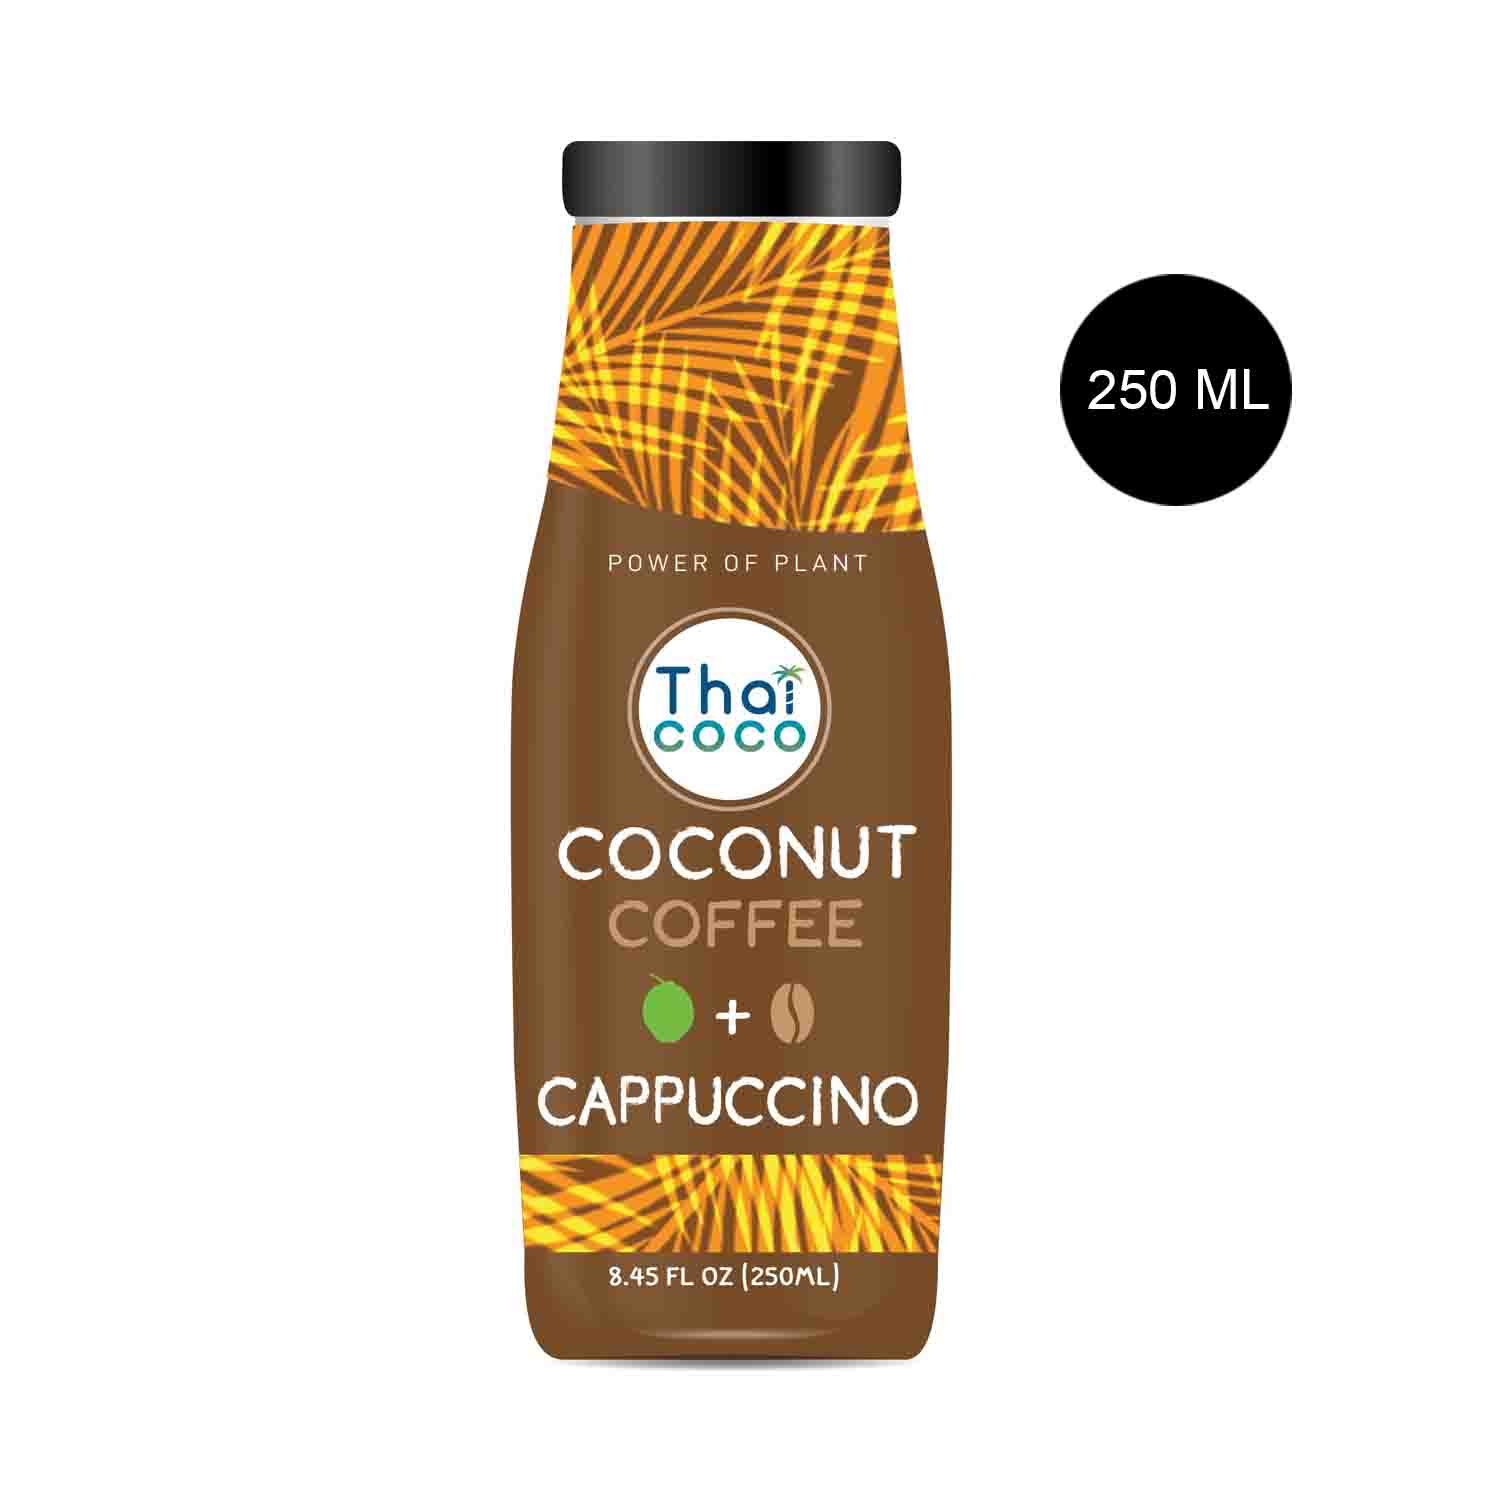 Thai Coco Coconut Coffee Cappuccino Flavor 250 ml